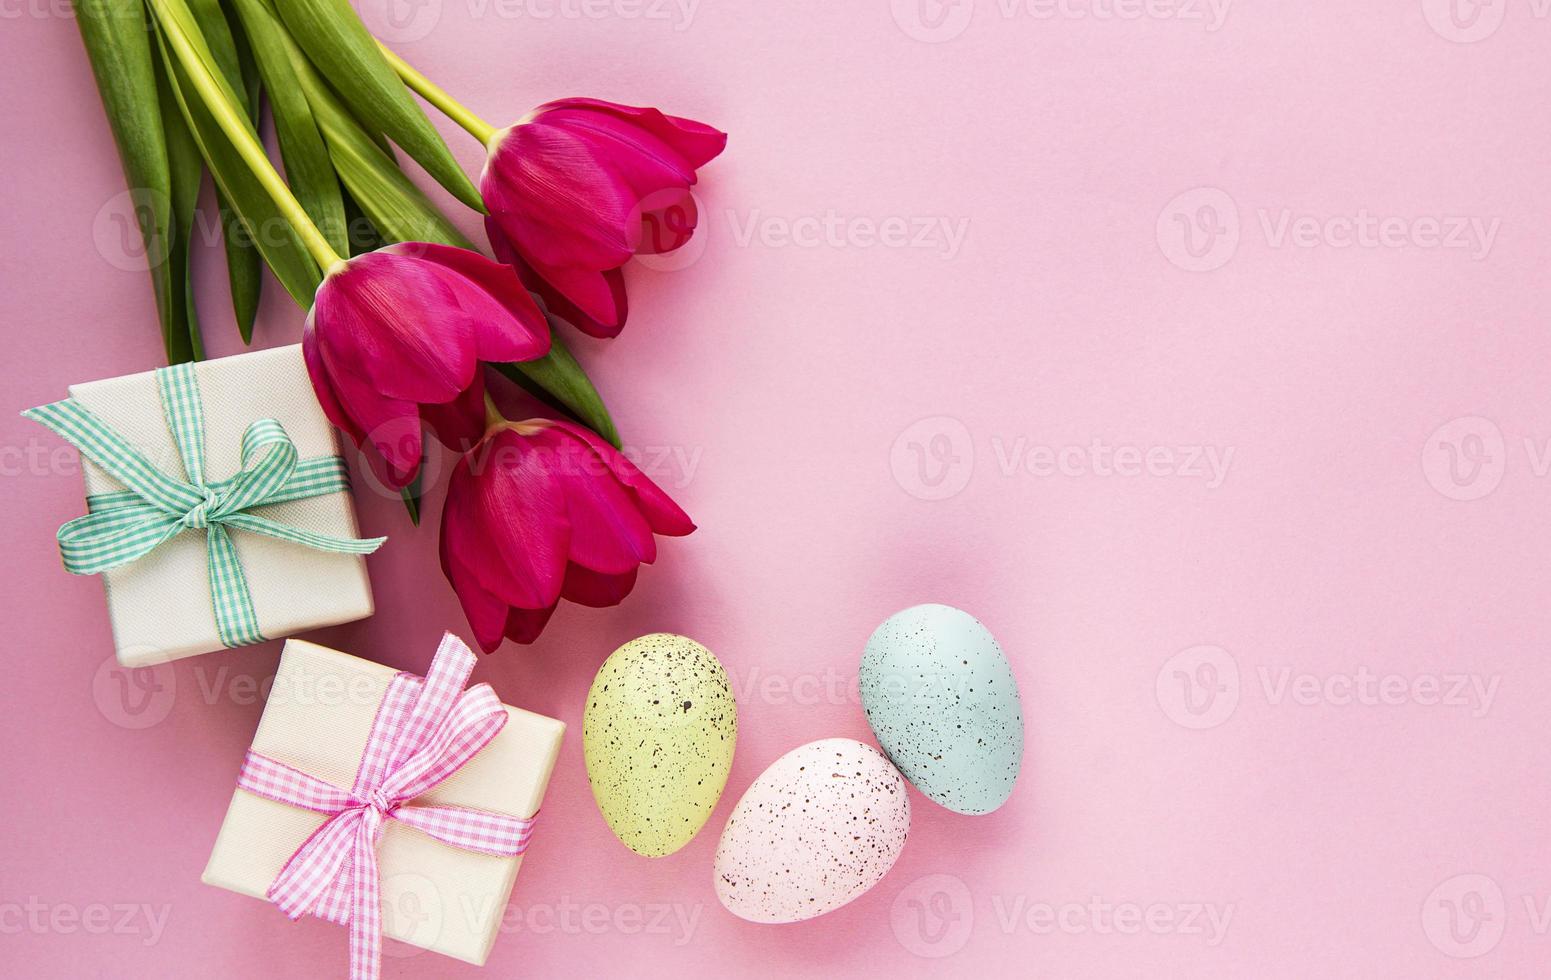 ovos de páscoa decorativos e tulipas foto